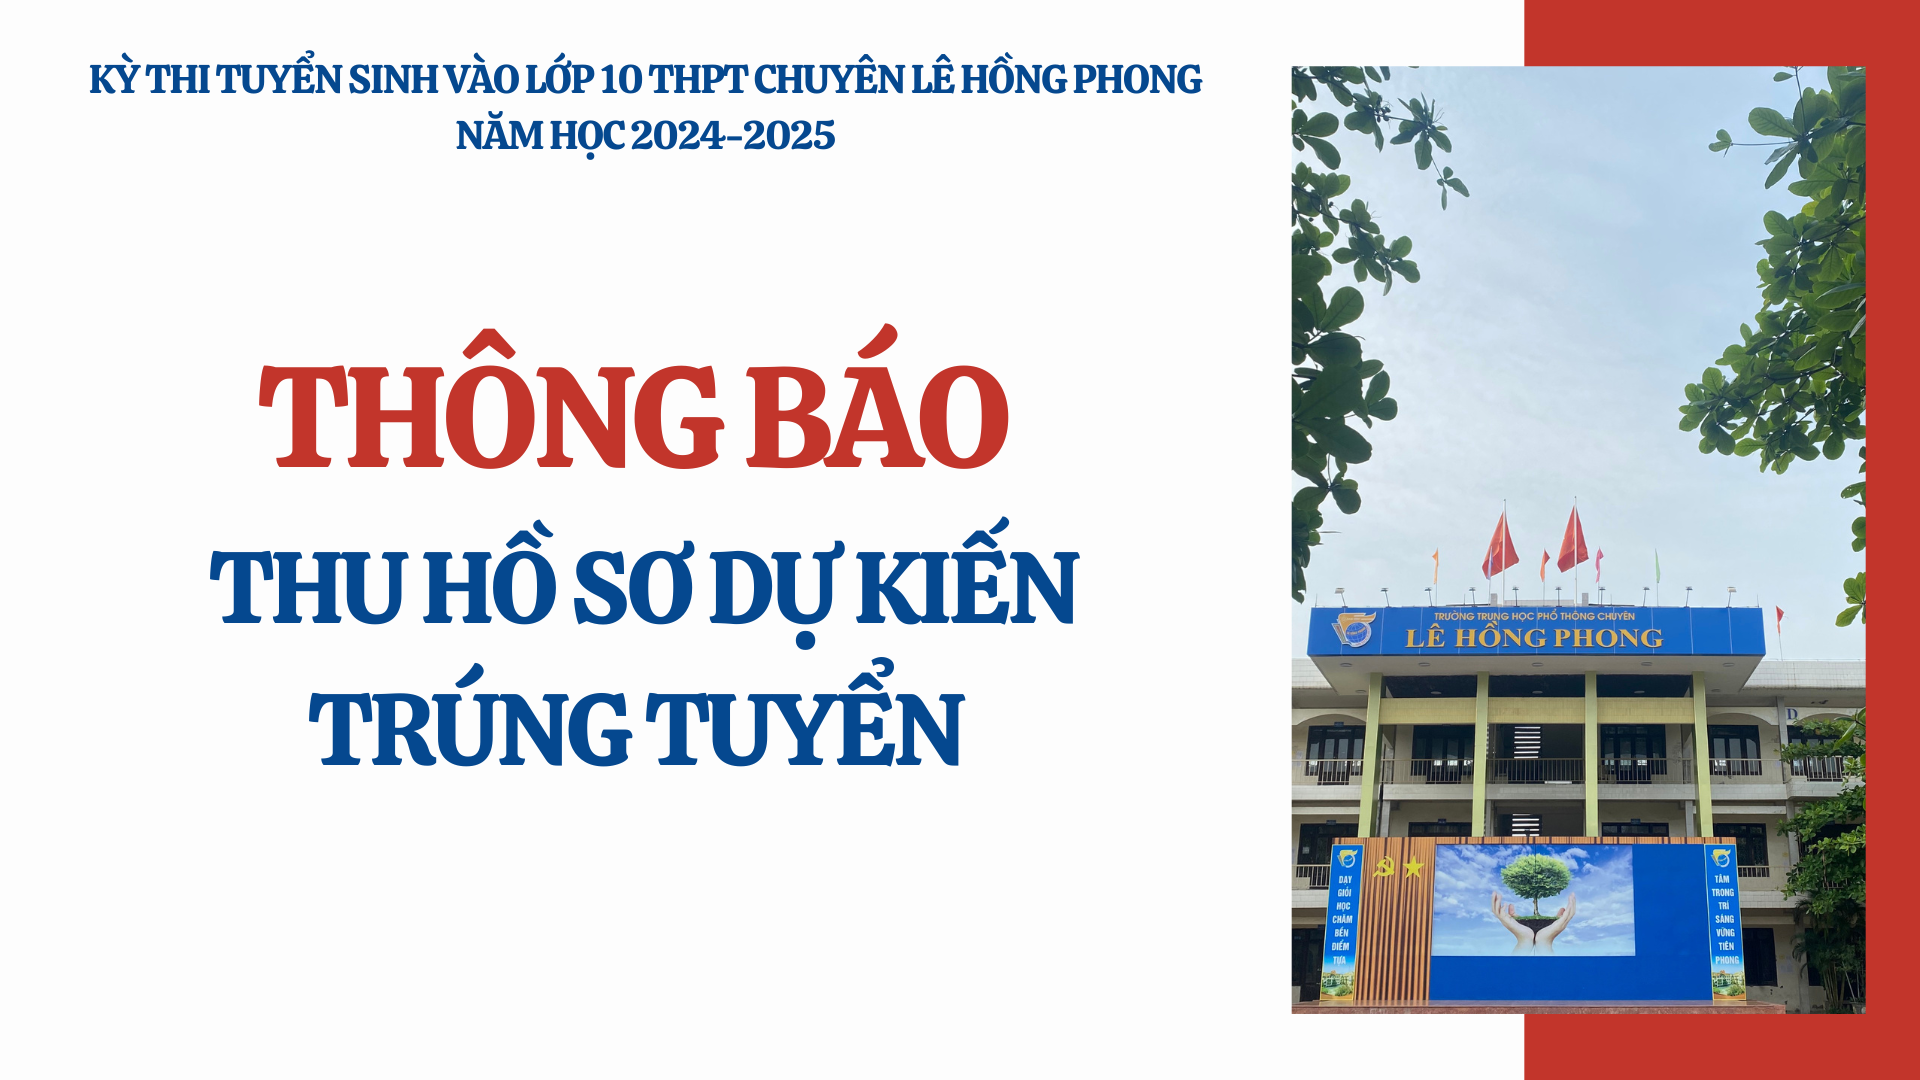 Thông báo thu hồ sơ của thí sinh DỰ KIẾN trúng tuyển vào lớp 10 trường THPT chuyên Lê Hồng Phong năm học 2024-2025